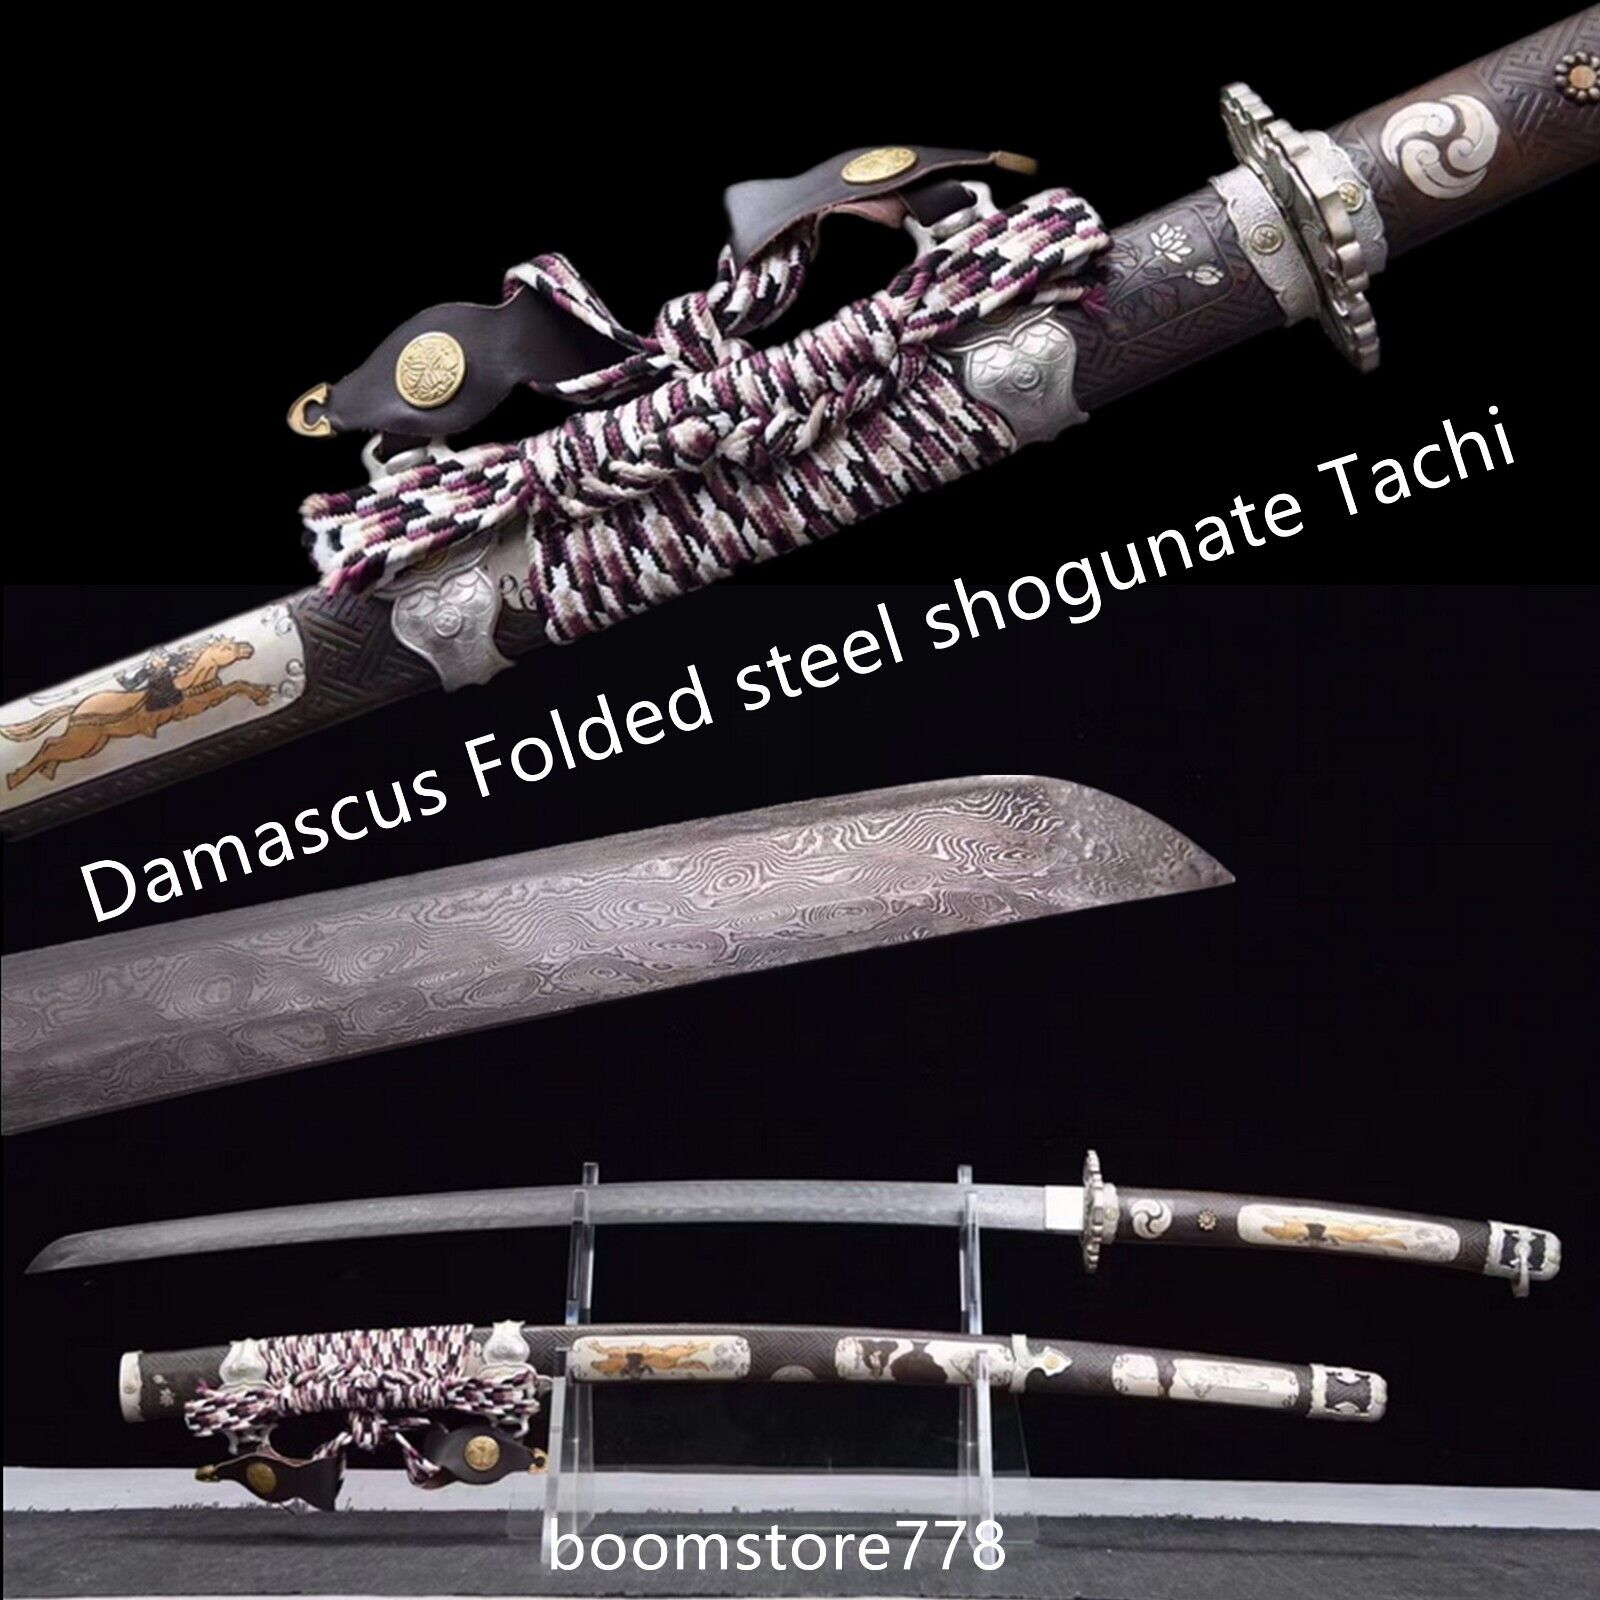 Hand Forged Damascus Folded steel Japanese Shogunate Tachi Sword Brass Saya